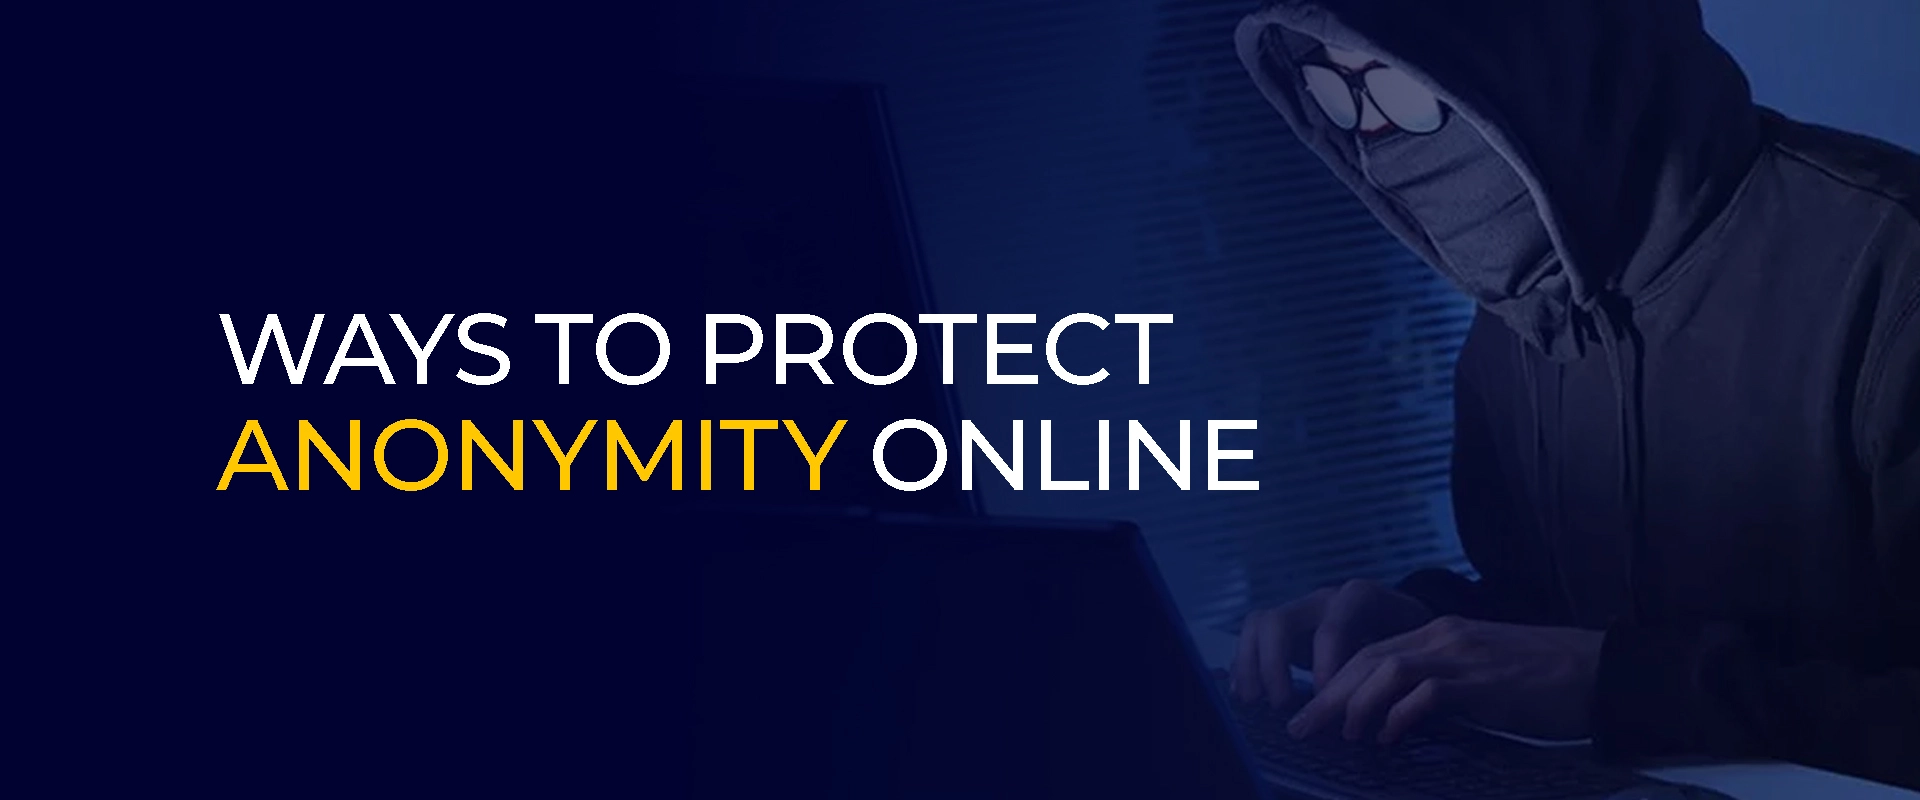 Cara Melindungi Anonimitas Online